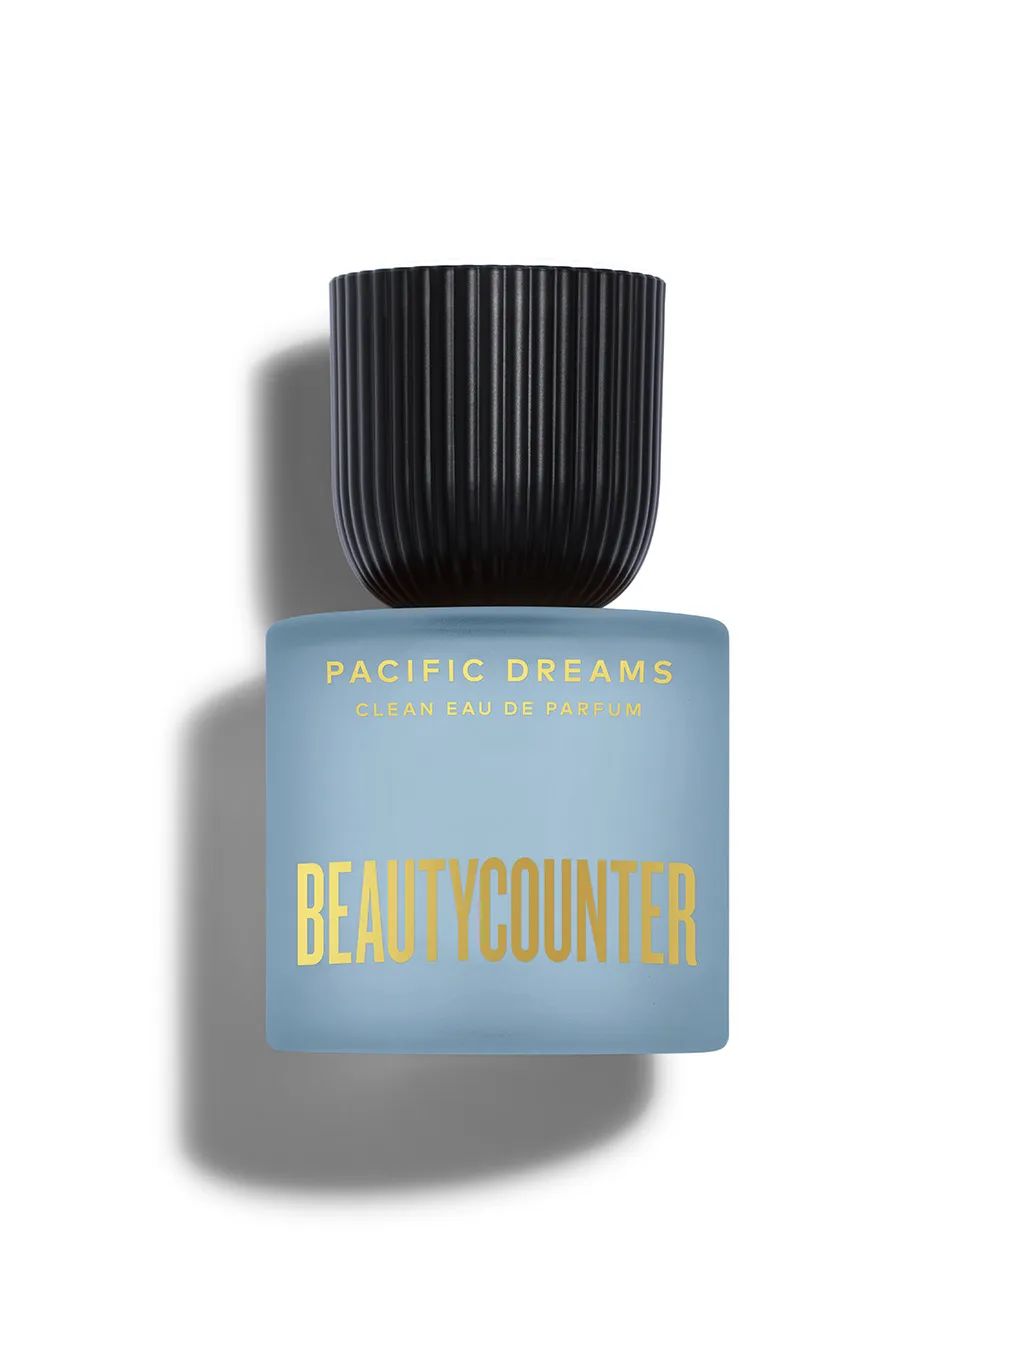 Pacific Dreams Clean Eau De Parfum | Beautycounter.com